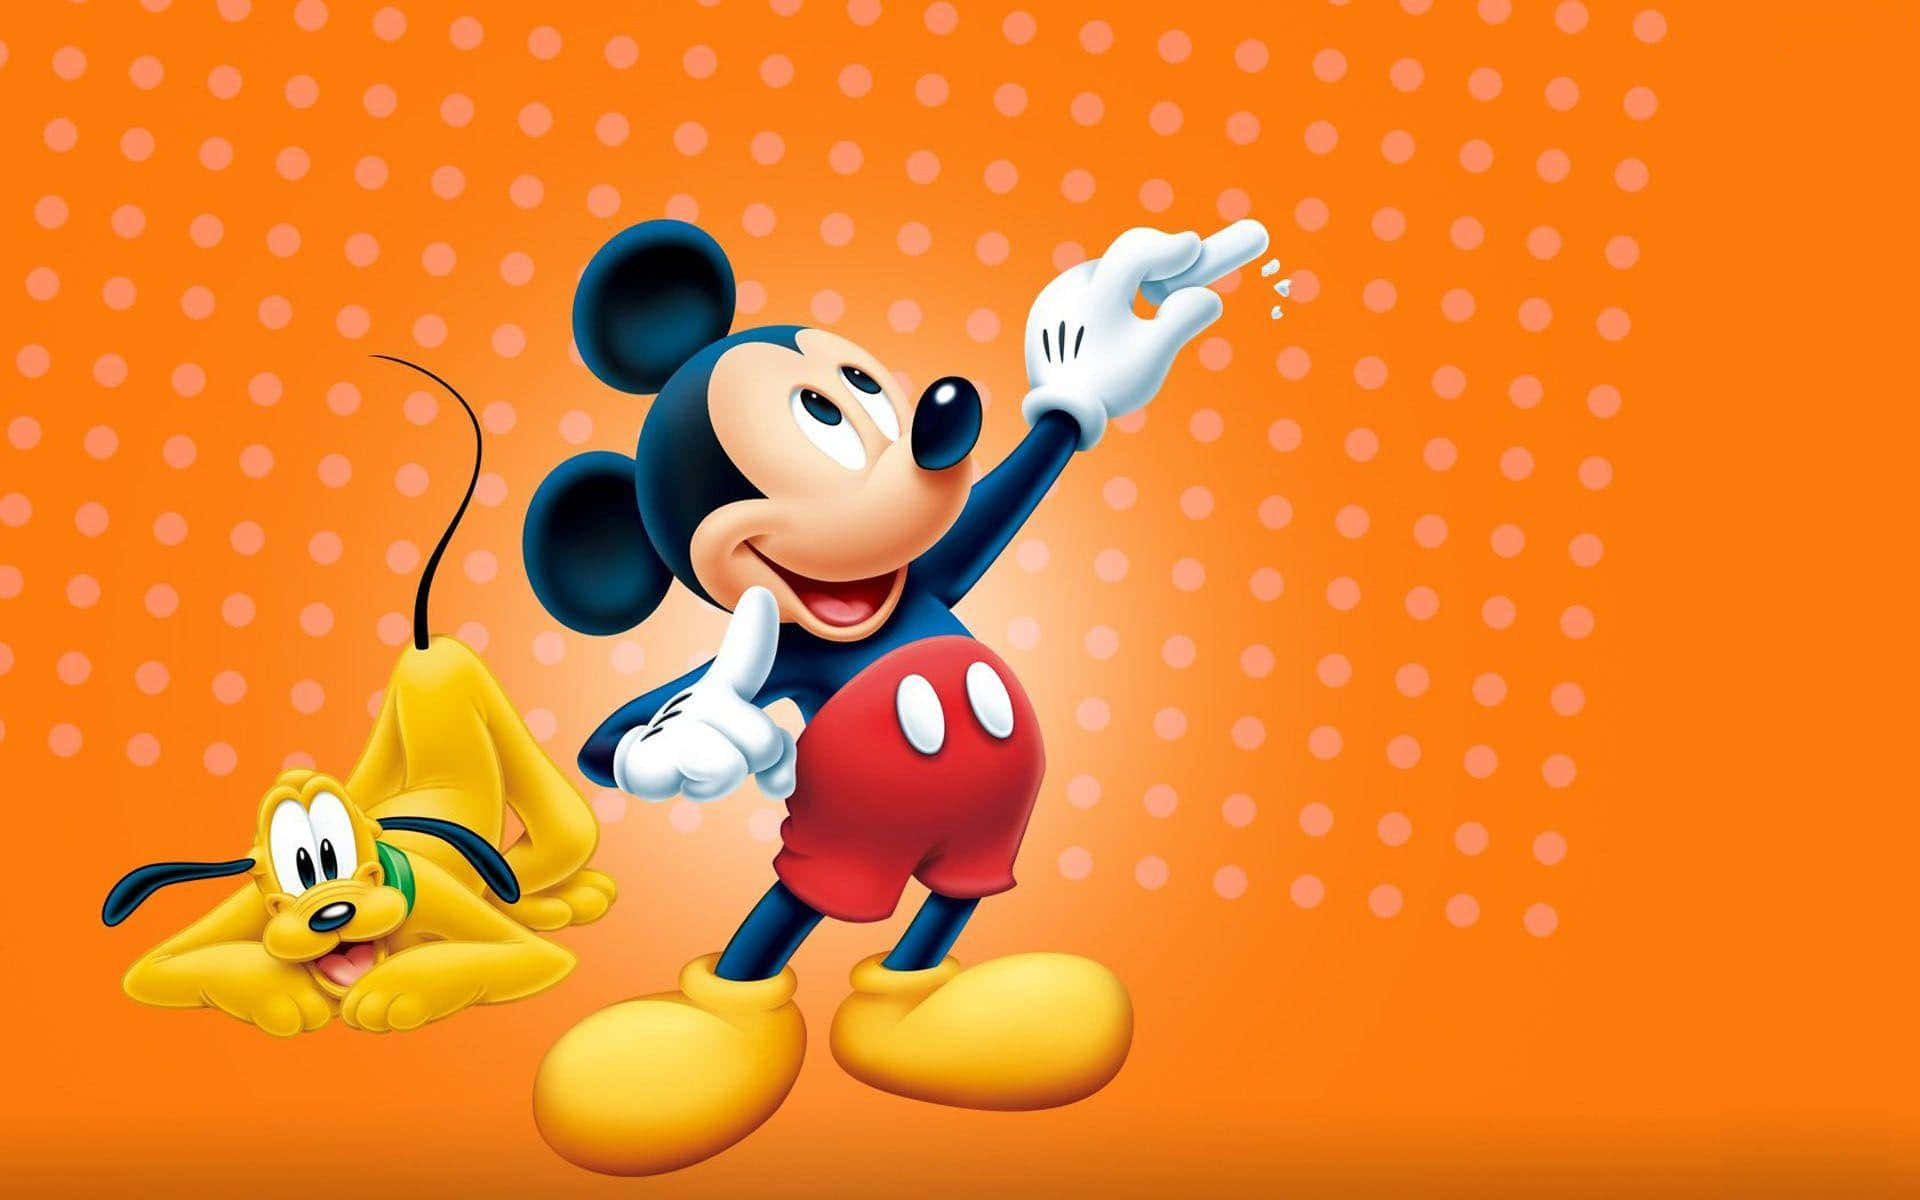 Curtao Mundo Colorido E Alegre Do Mickey Mouse Enquanto Você Realiza Seu Trabalho. Papel de Parede